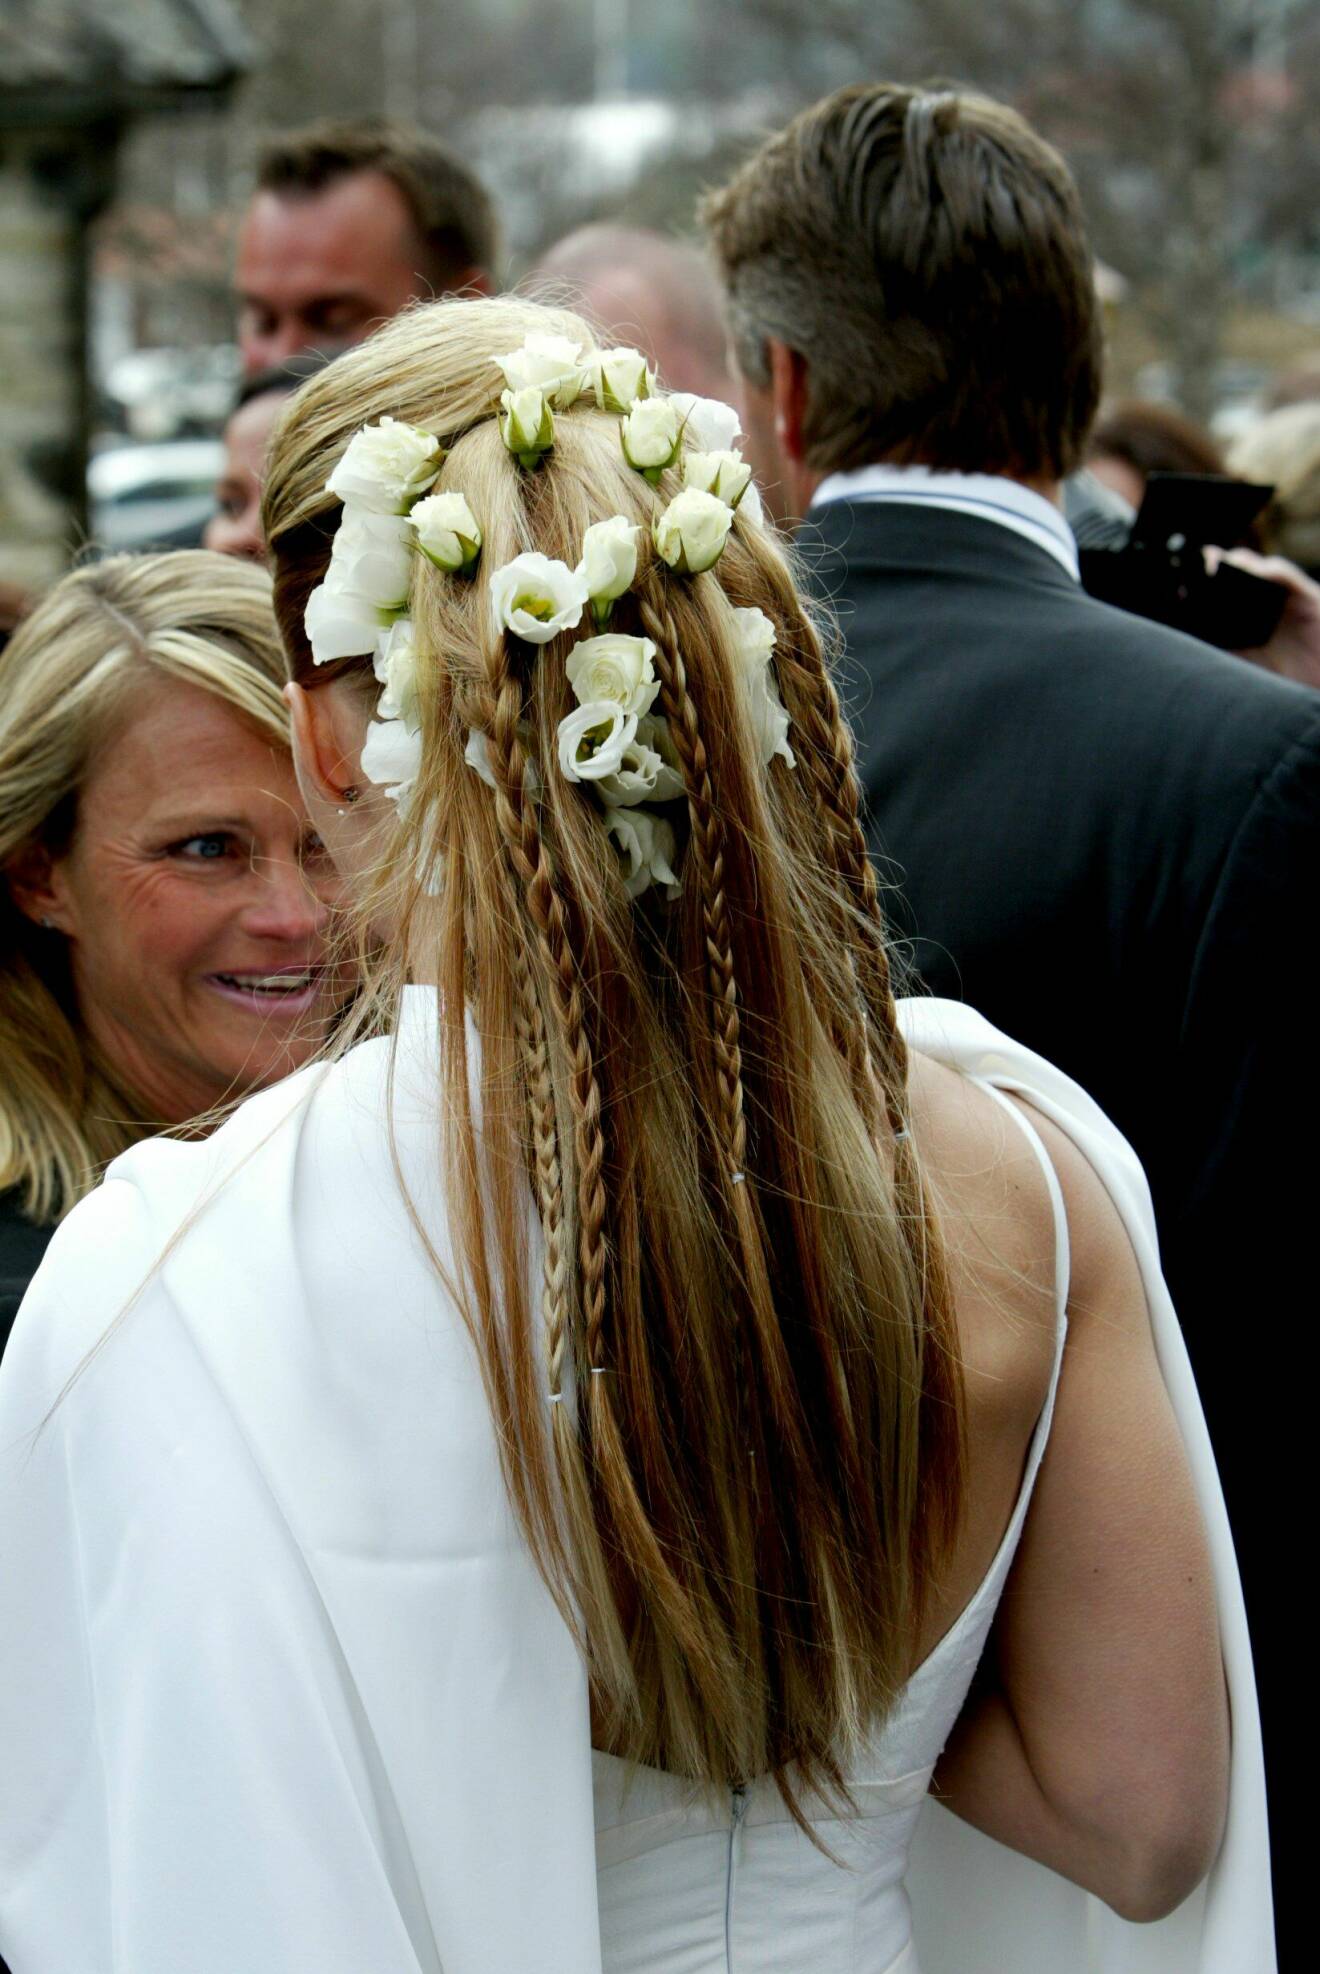 Kristin Kaspersens frisyr fotad bakifrån. Håret var uppsatt med flätor och vita blommor.